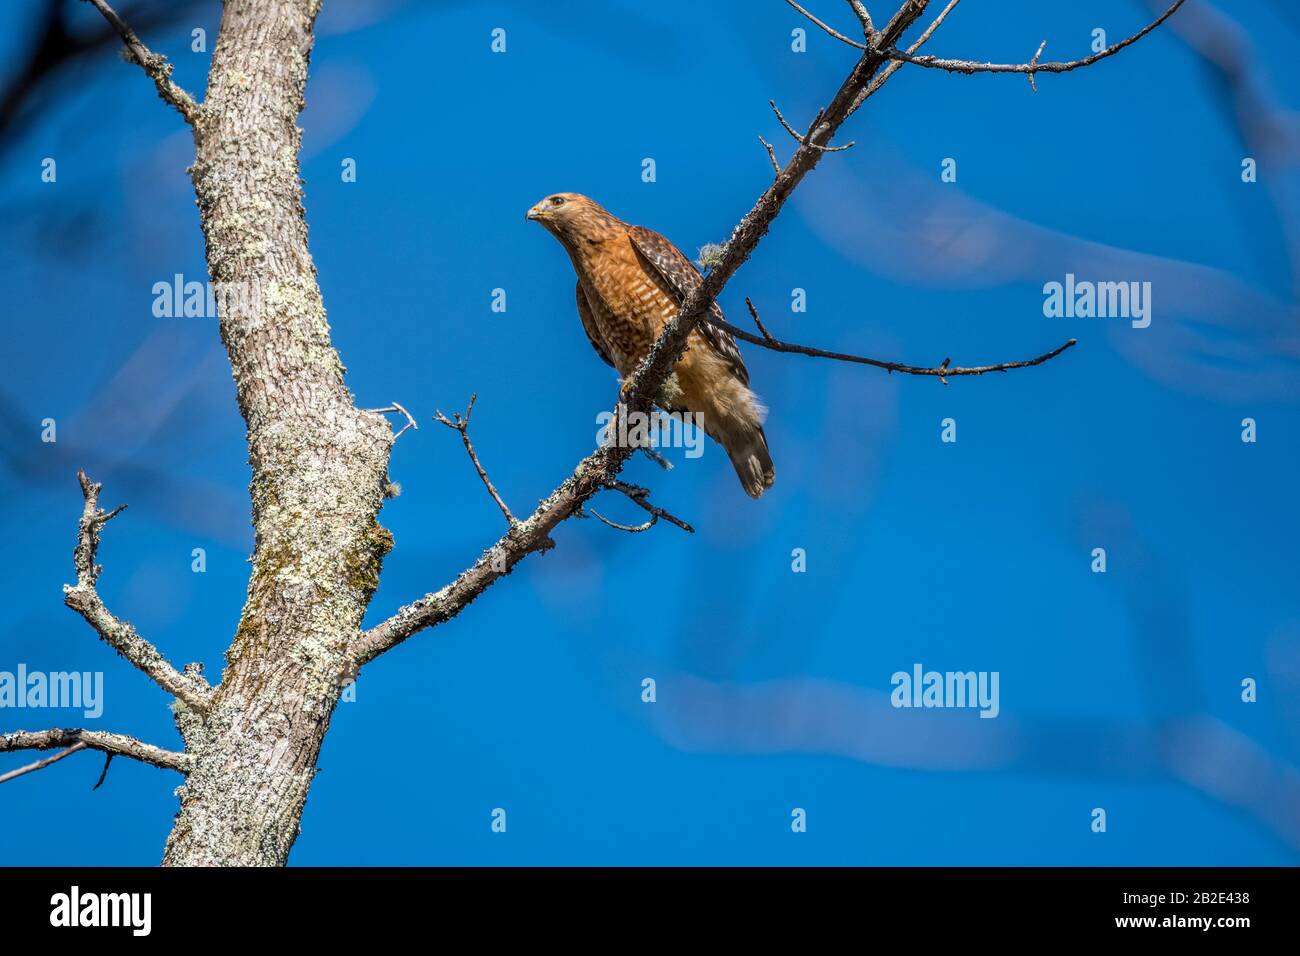 En lo alto de un árbol se encuentra un halcón de Cooper encaramado en una rama en busca de presas con un vibrante cielo azul en el fondo en un día soleado en invierno Foto de stock